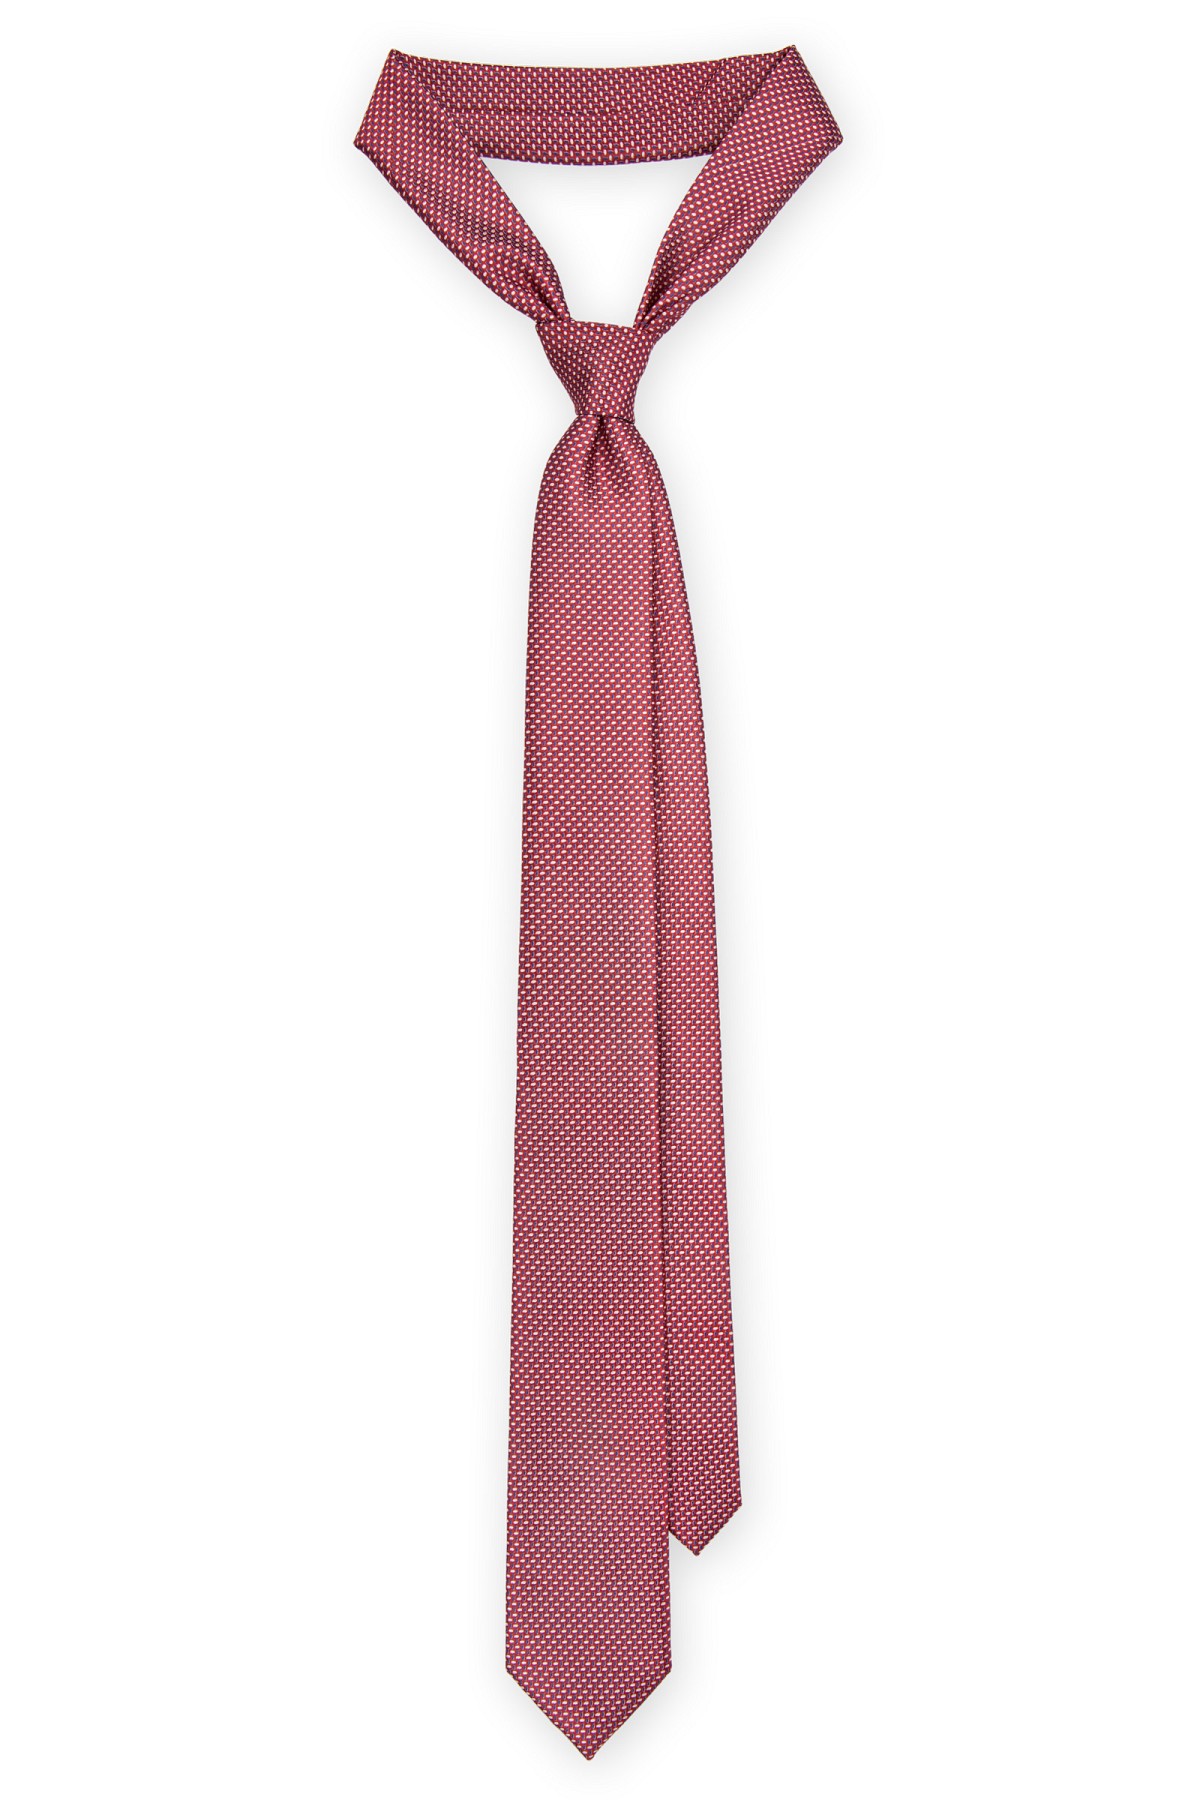 Krawat Czerwony Mikrowzór